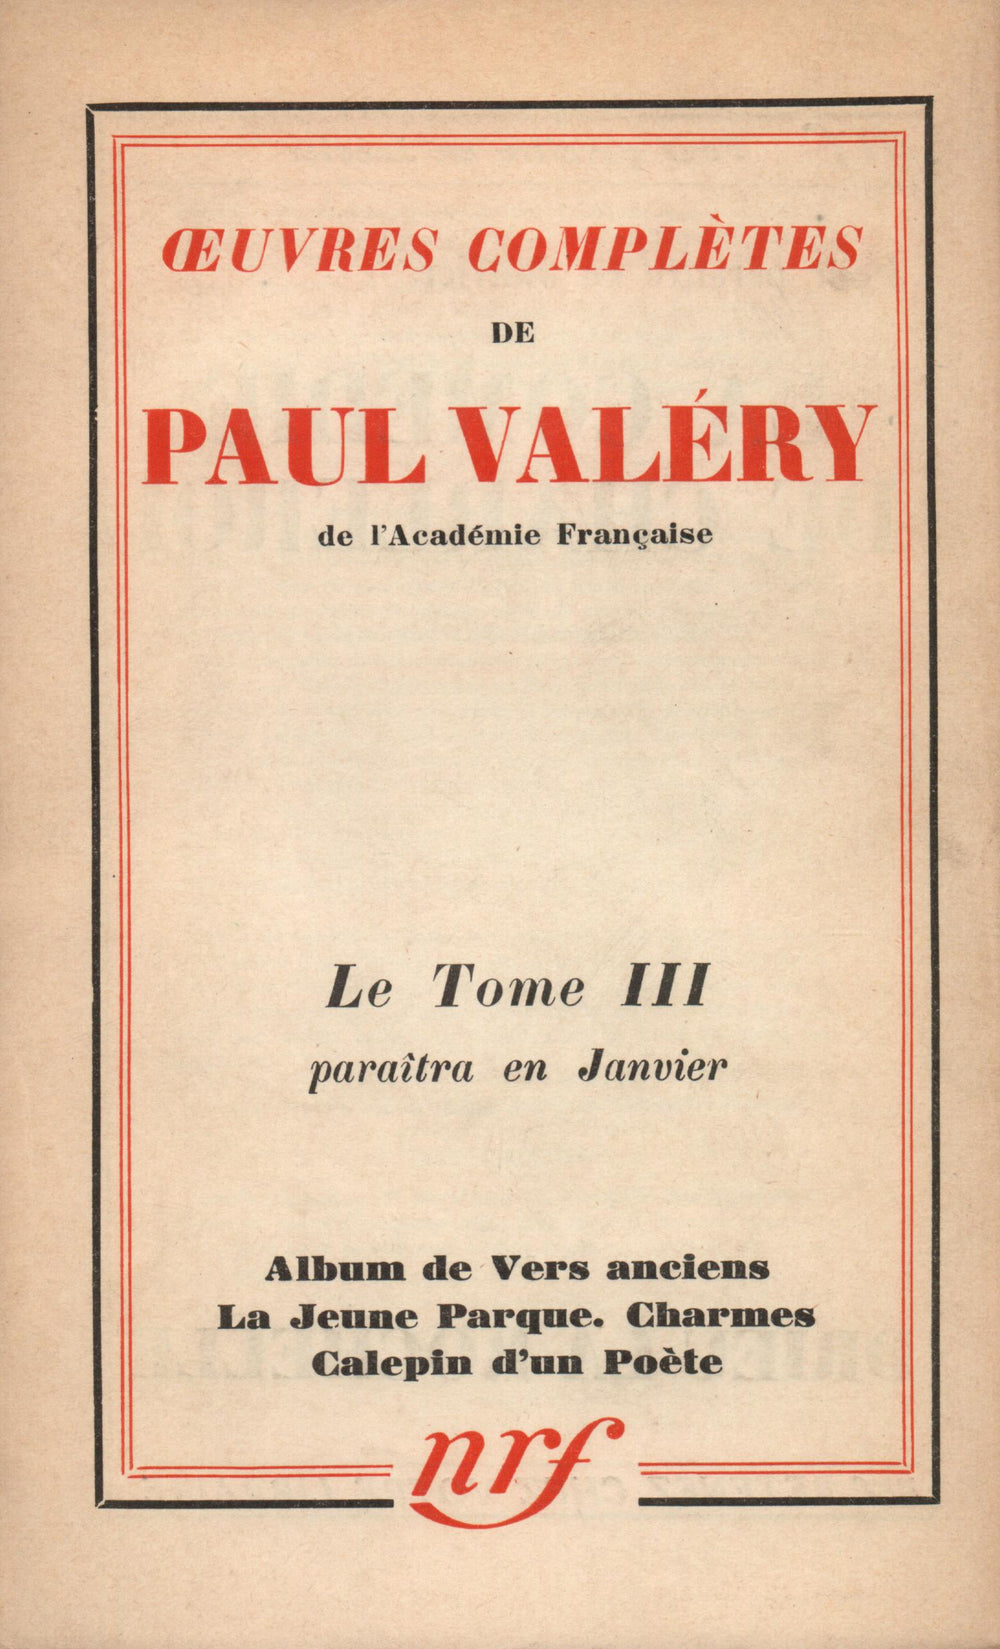 La Nouvelle Revue Française N° 244 (Janvier 1934)